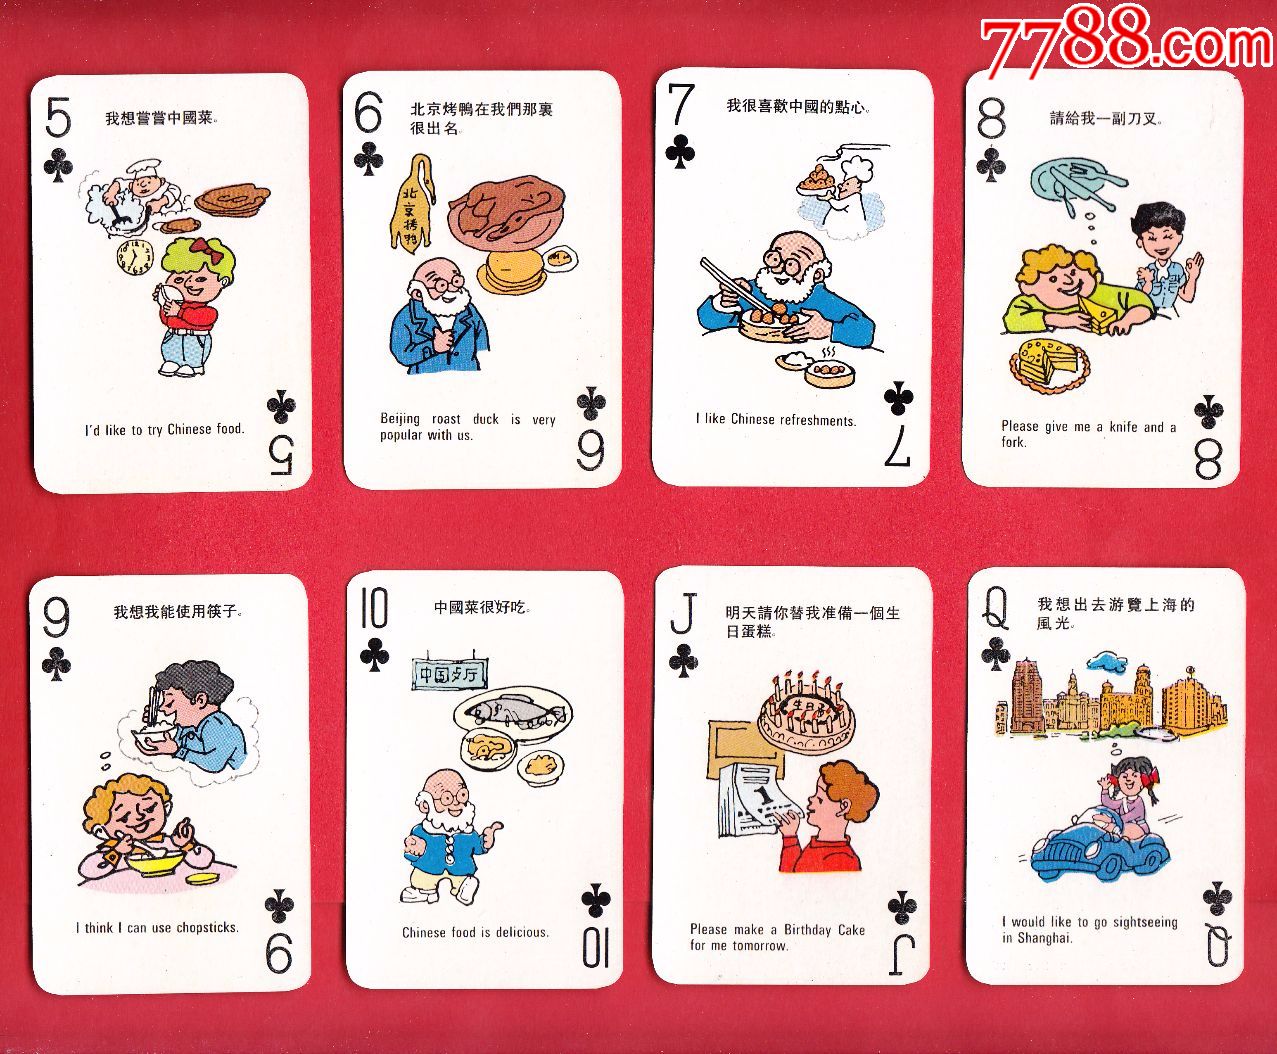 上海旅游扑克常用对话中英文对照配图上海中国